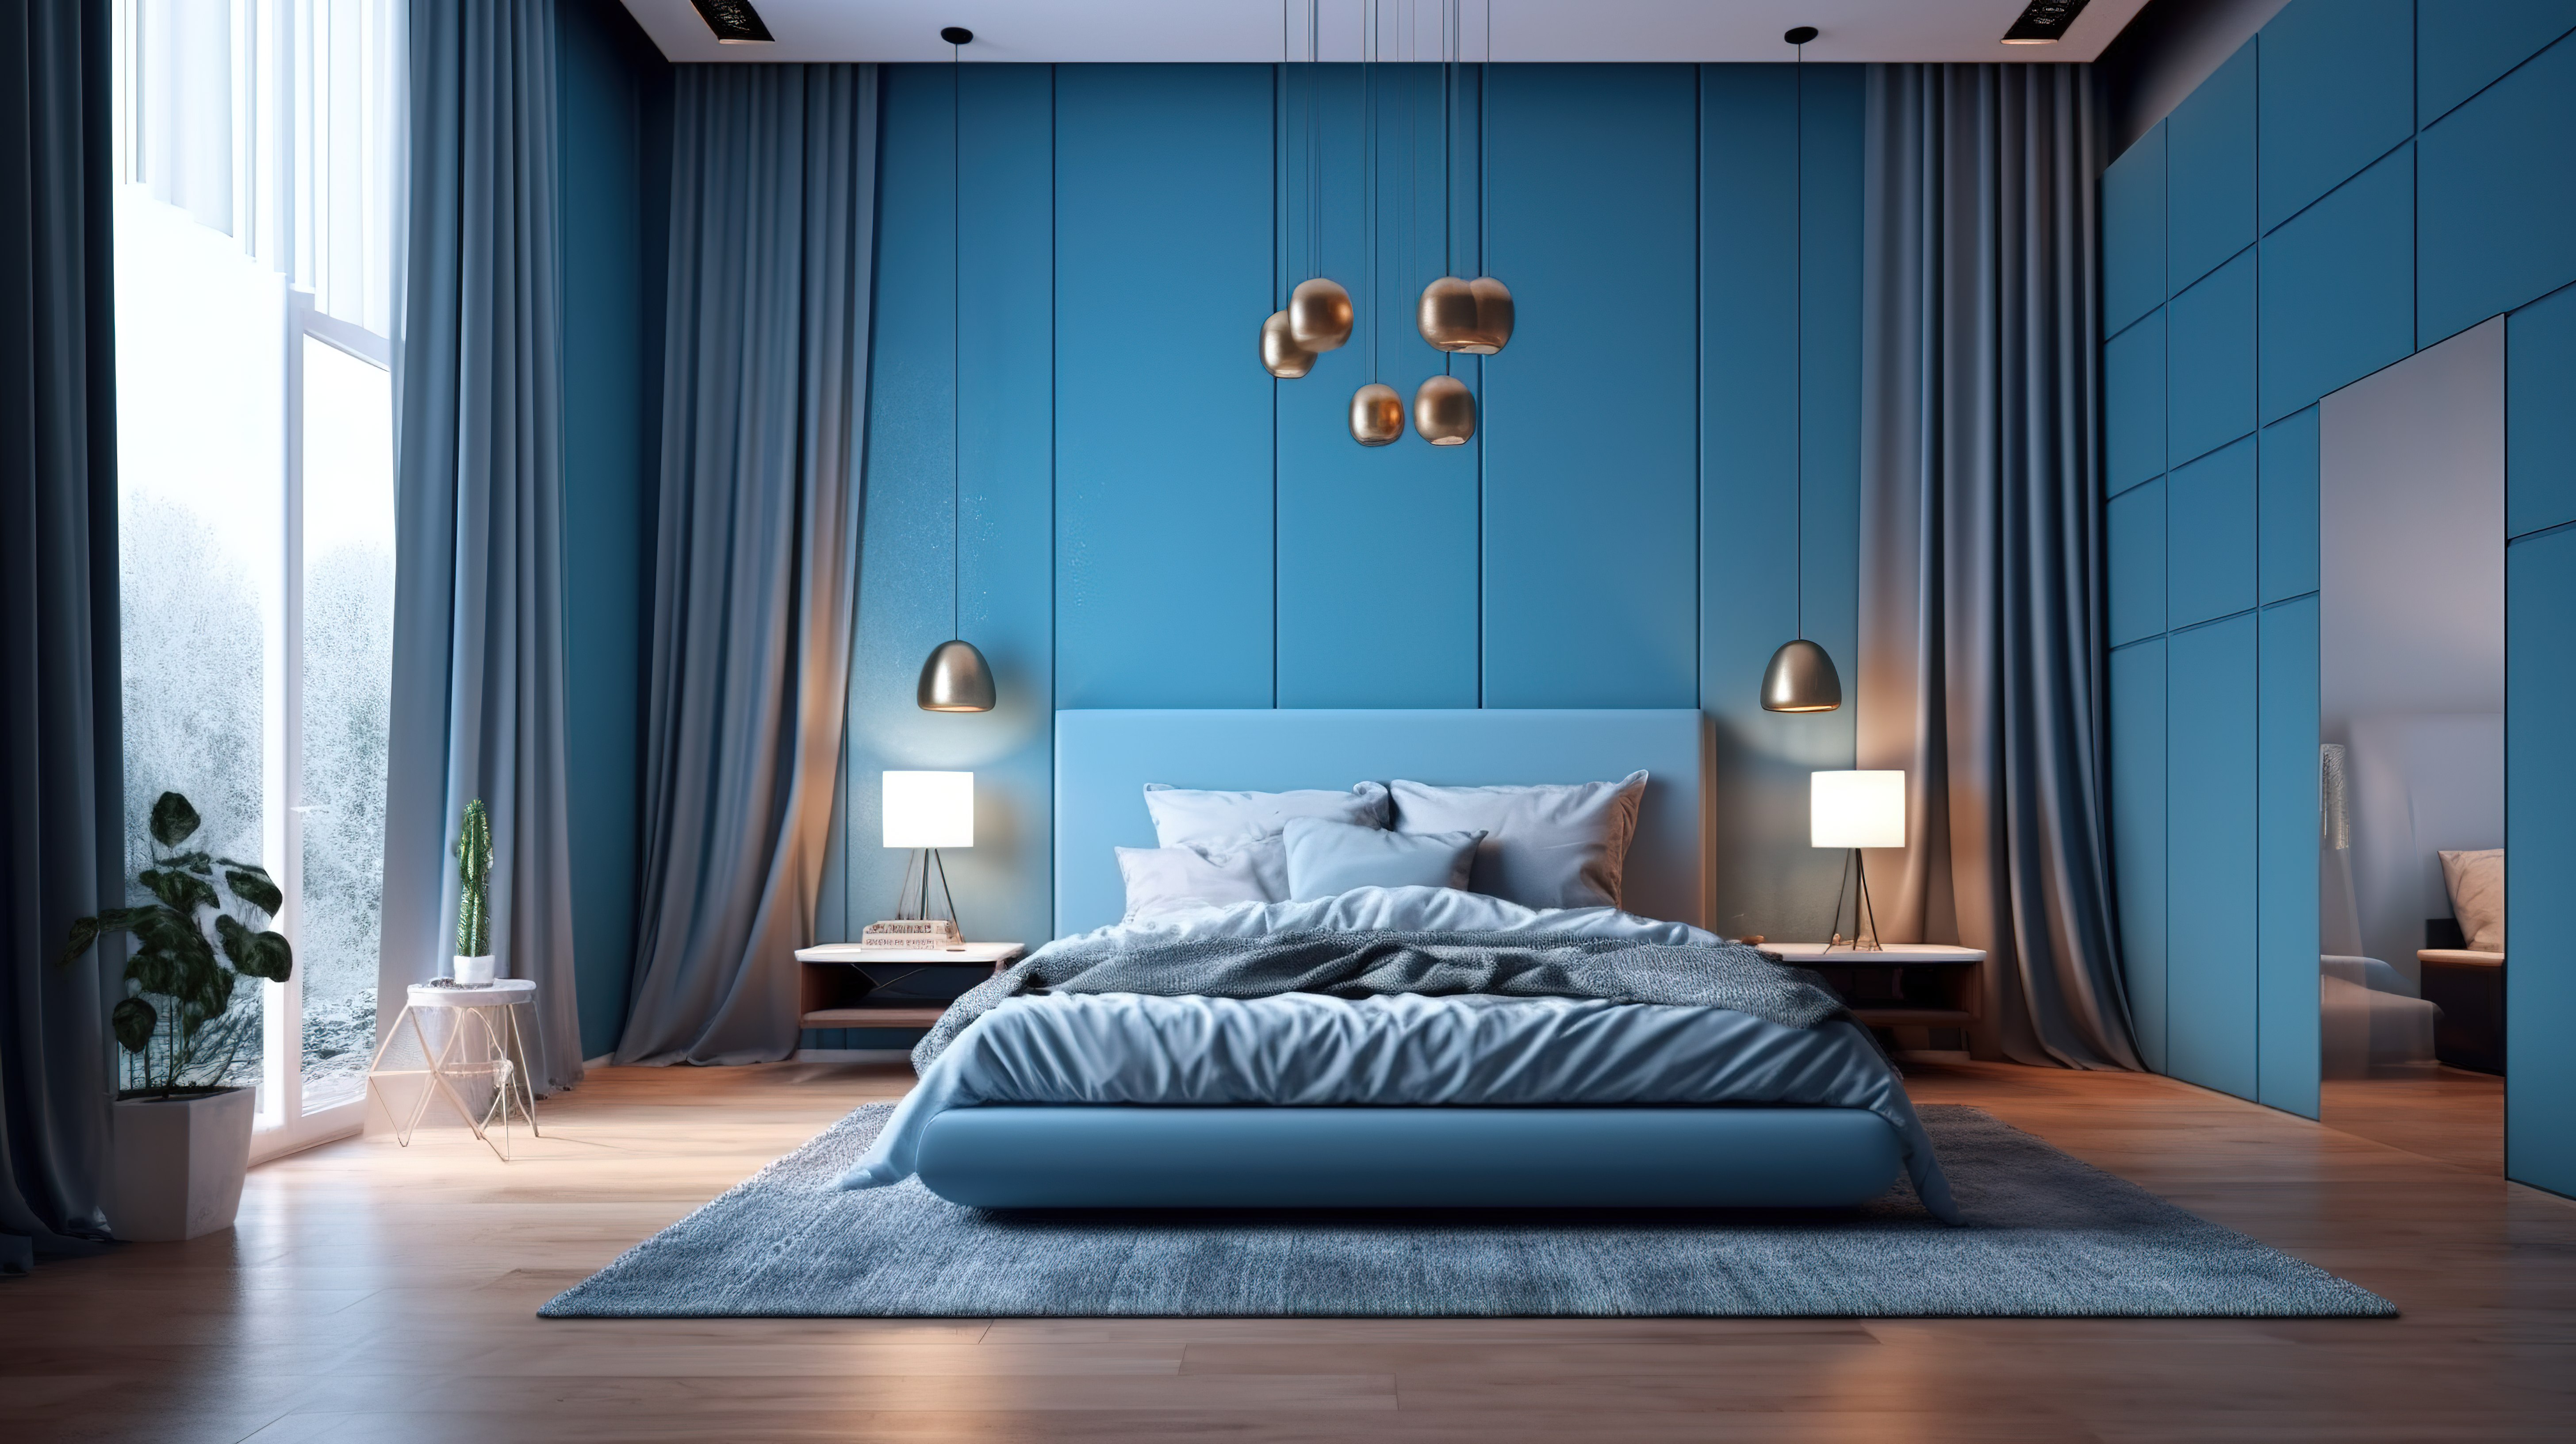 3D效果图展示了宁静的蓝色卧室室内设计图片